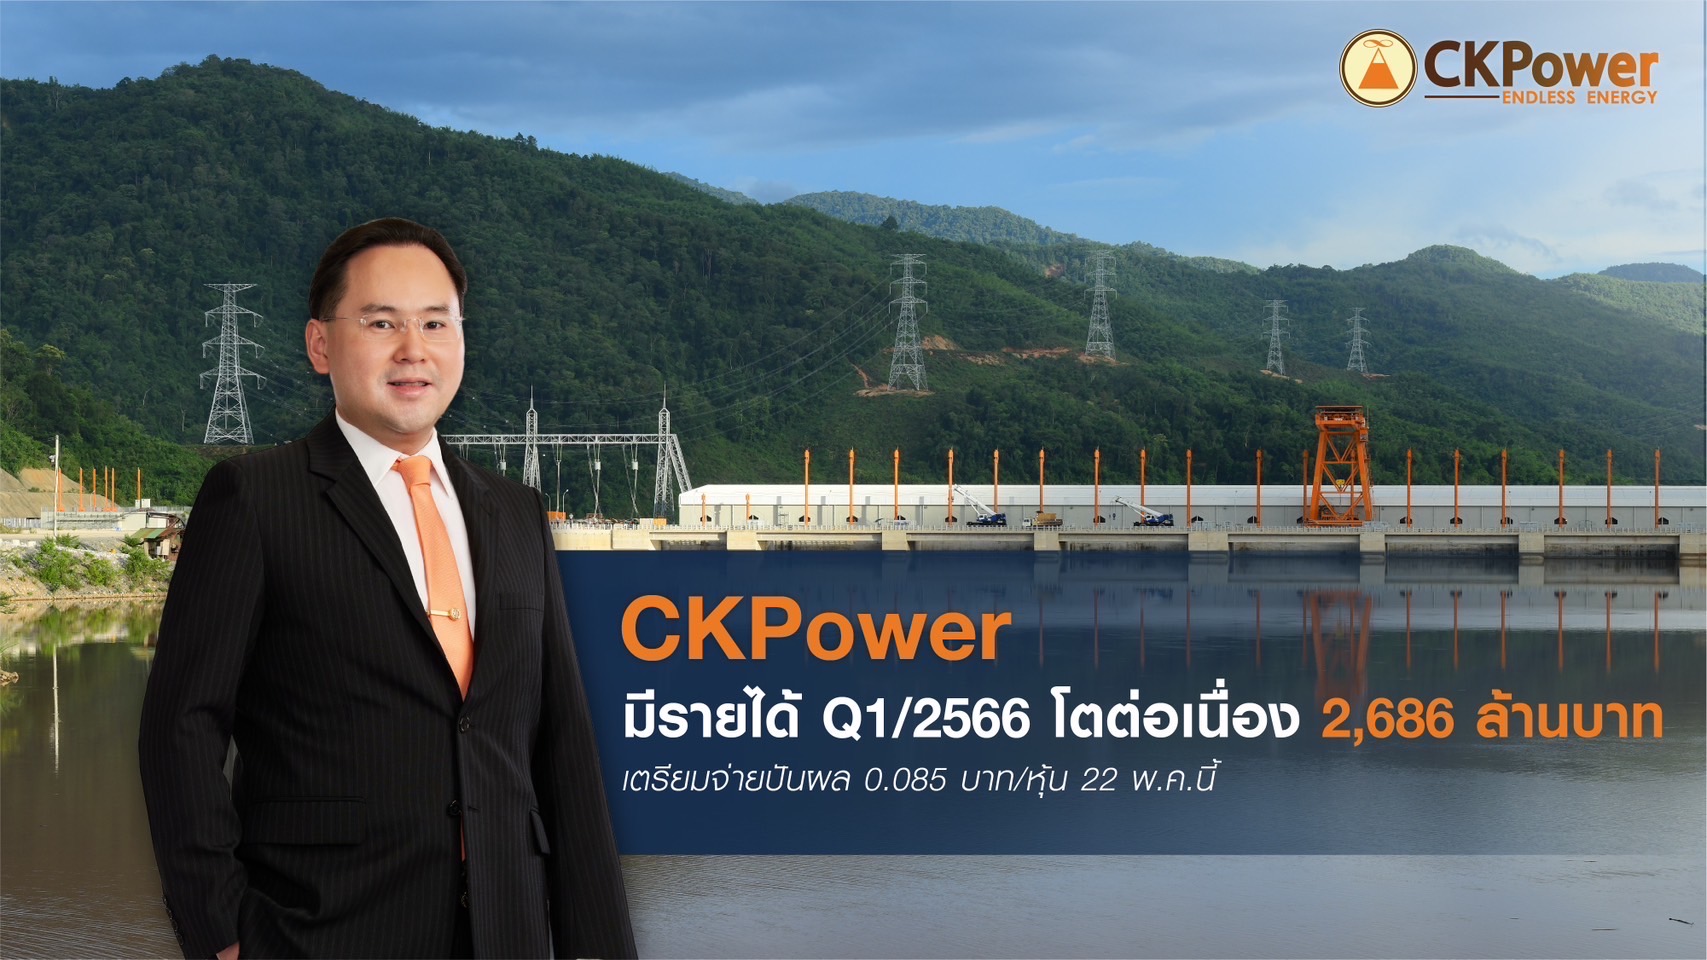 CKP เผยรายได้ Q1/2566 โตต่อเนื่อง 2,686 ล้านบาท เตรียมจ่ายปันผล 0.085 บาท/หุ้น 22 พ.ค.นี้